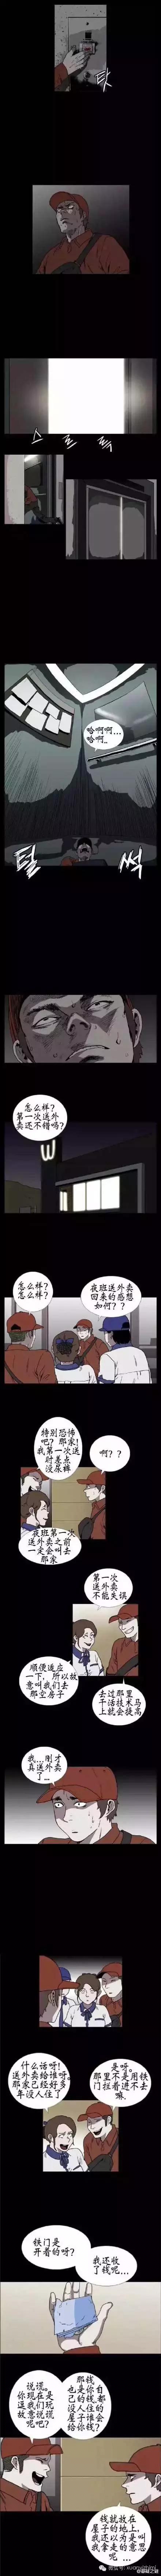 韩国微恐悬疑漫画《外卖服务》，剧情走向贴近生活